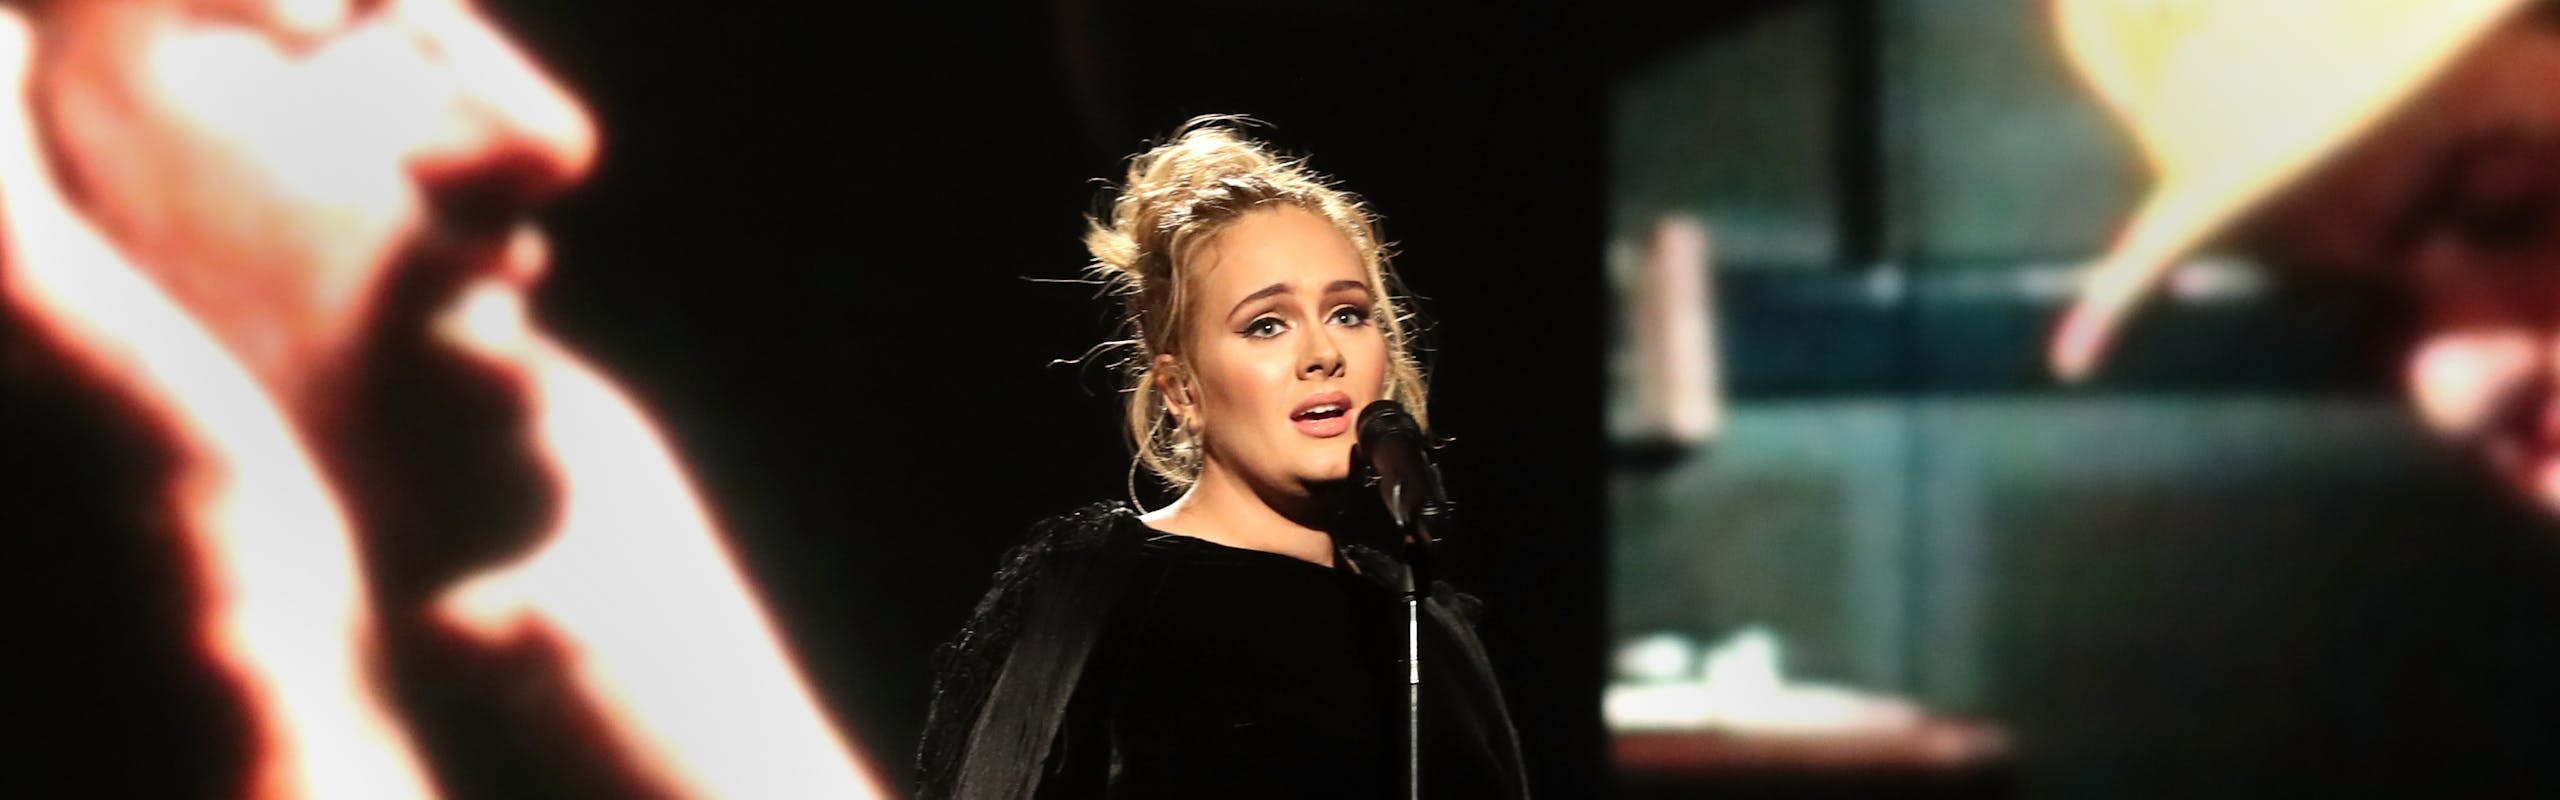 Adele alla 59esima edizione dei Grammy Awards canta George Michael.